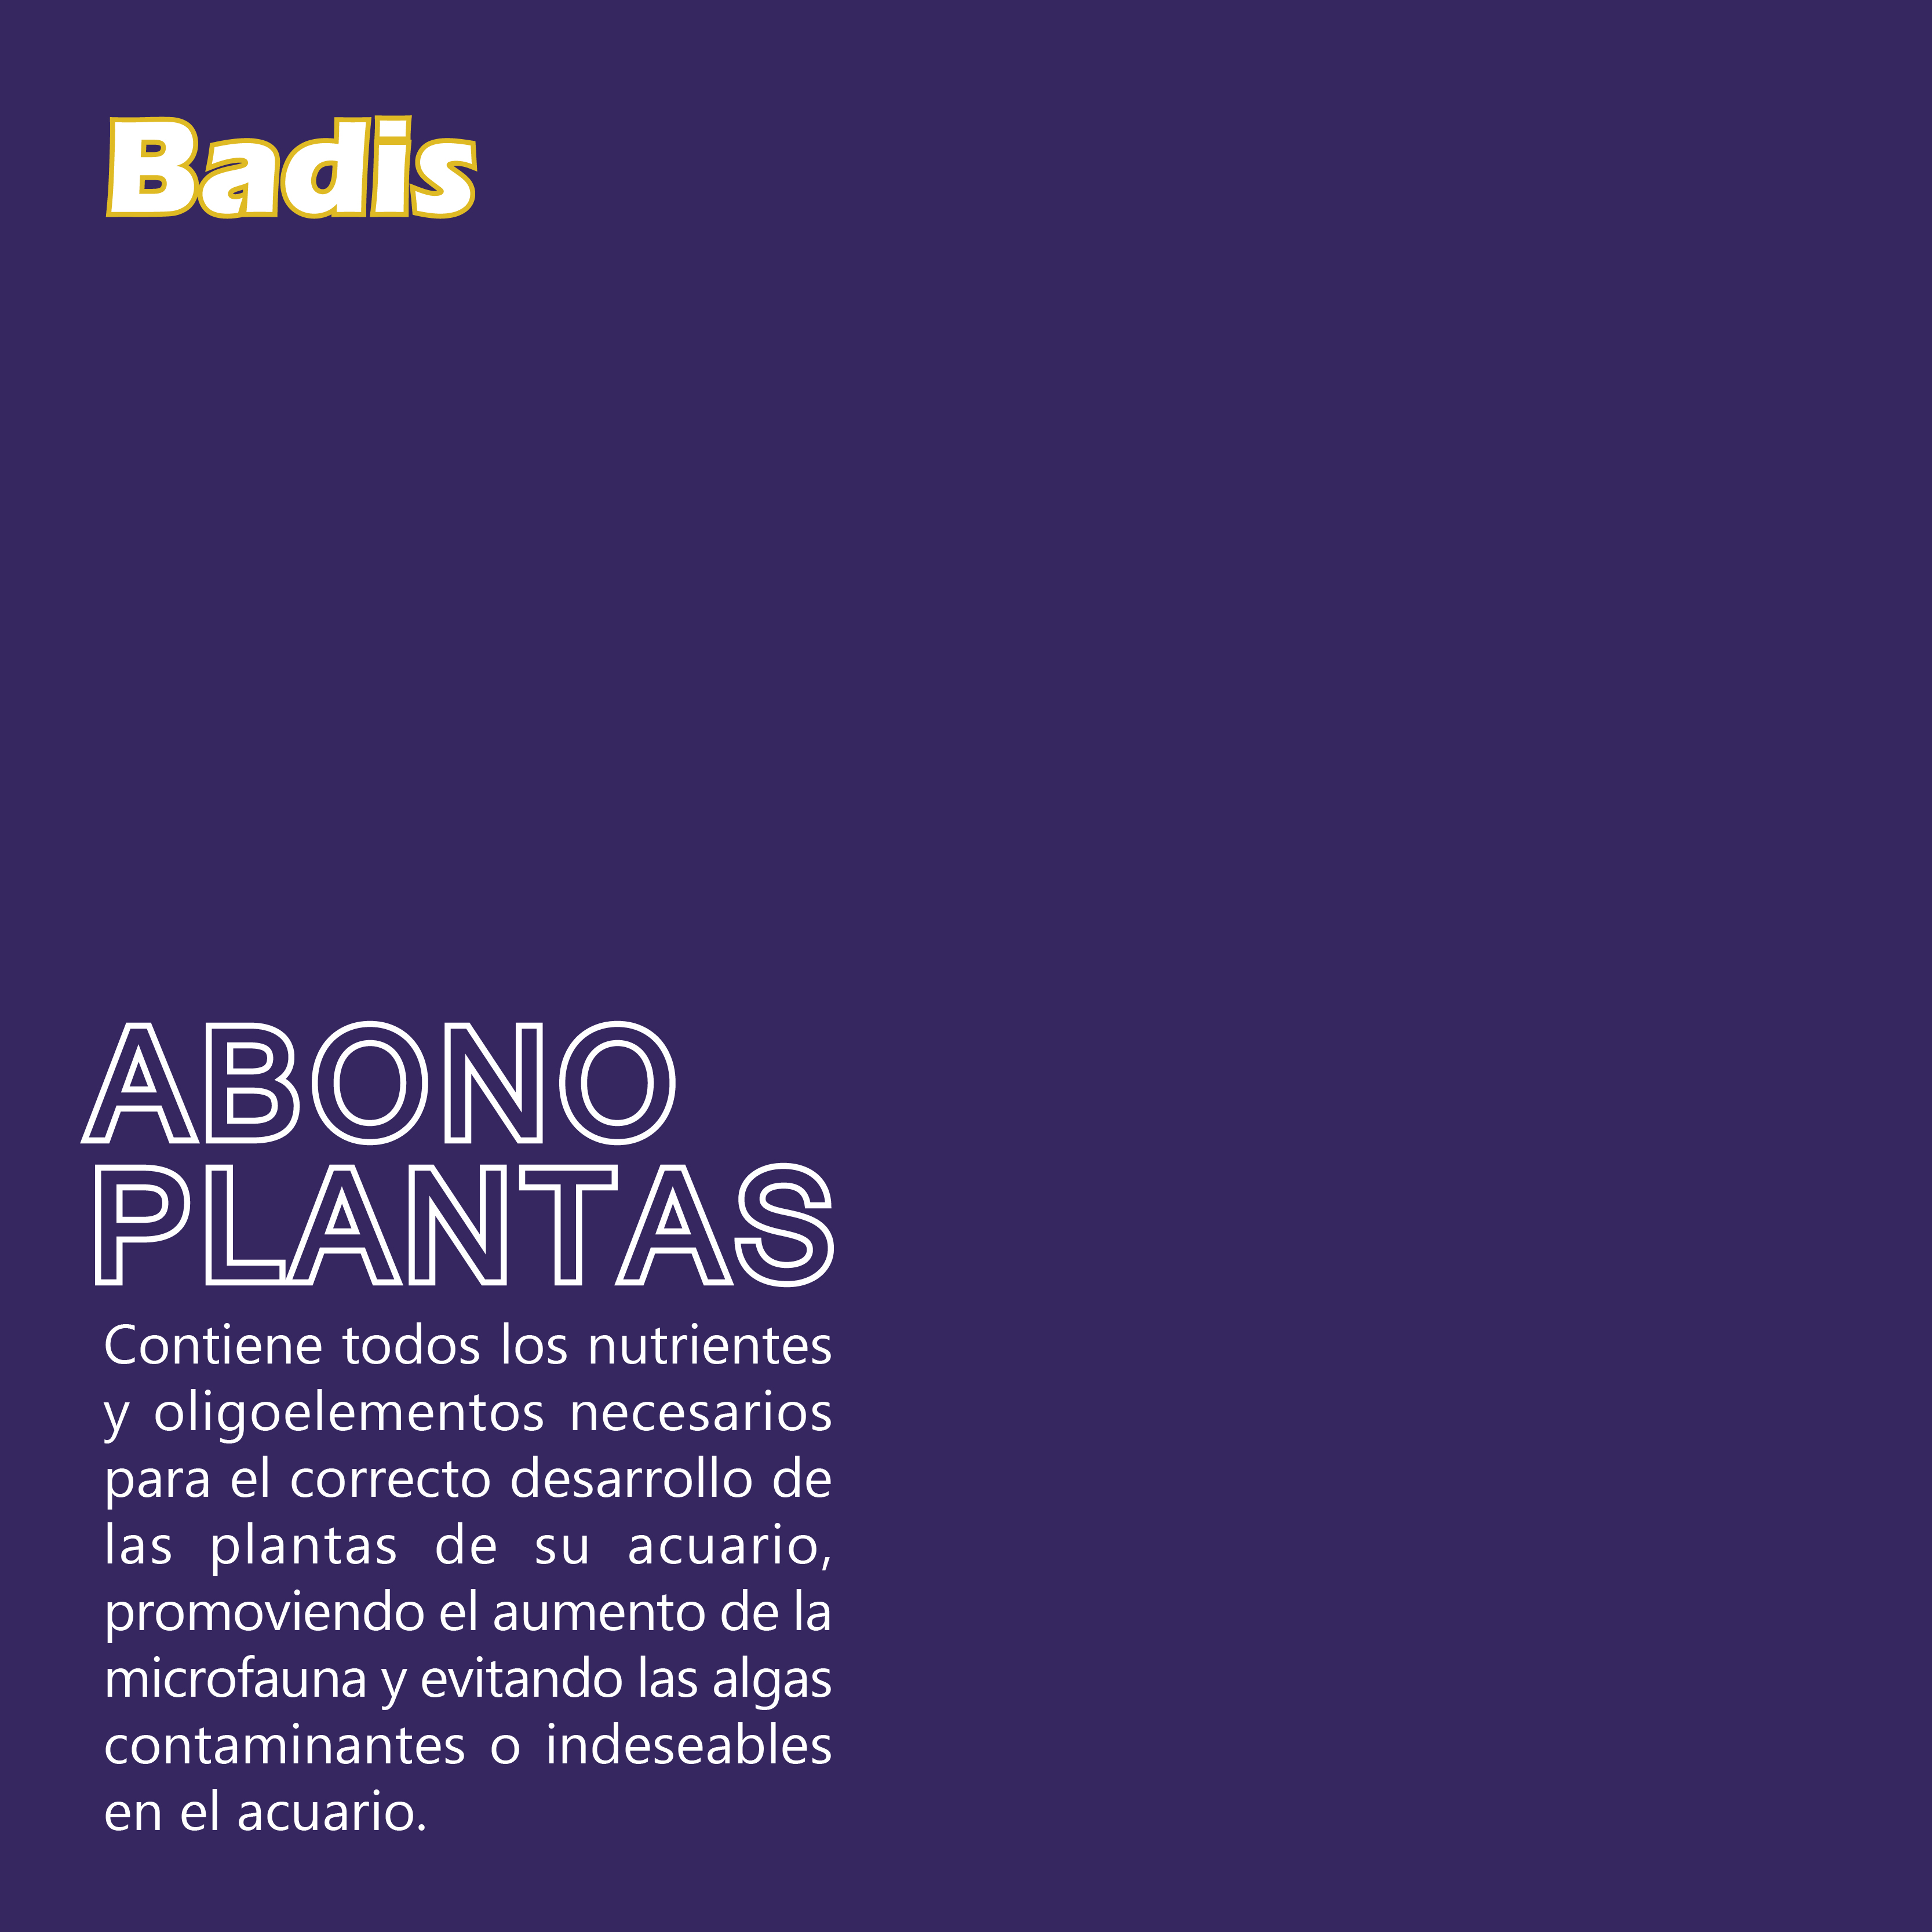 BADIS ABONO PLANTAS